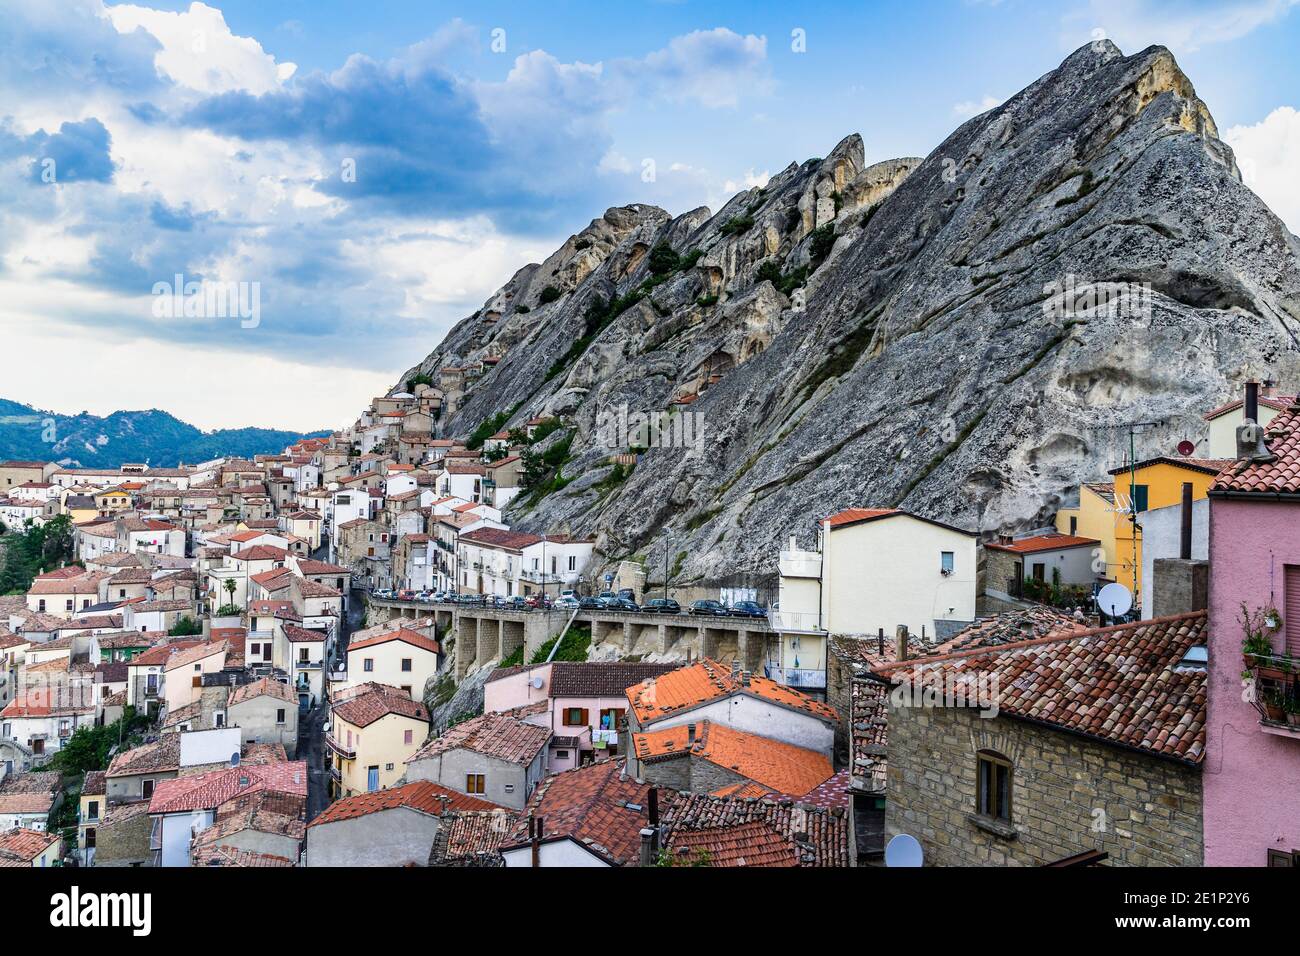 Le village pittoresque de Pietrapertosa sur les rochers pittoresques des Apennines Dolomiti Lucane, Basilicate, Italie Banque D'Images